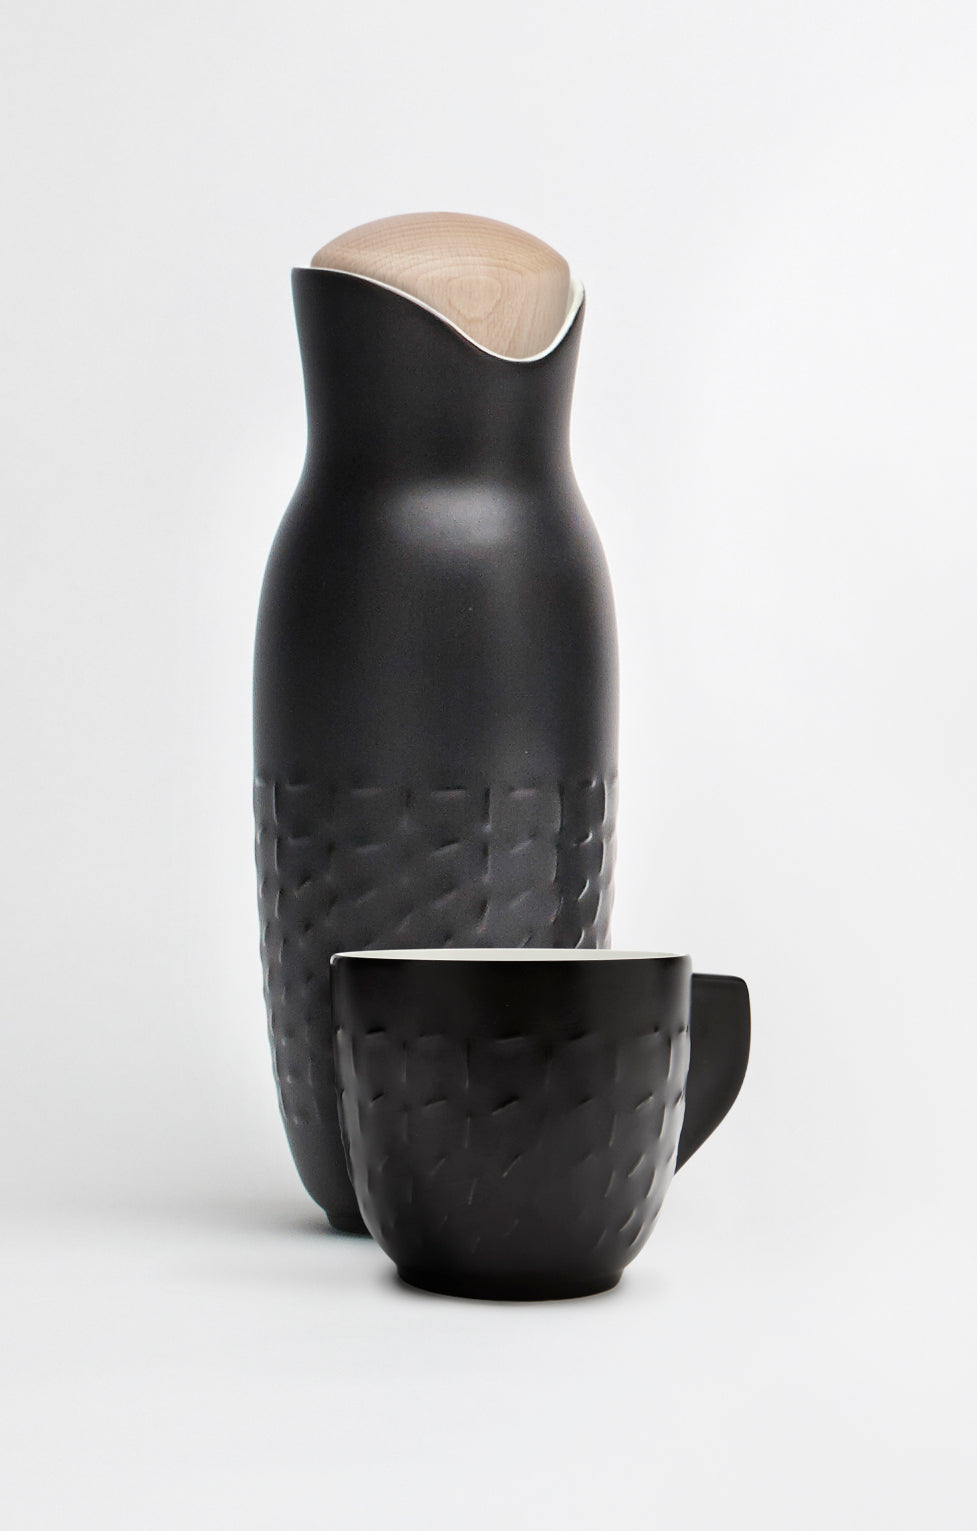 Footprint Carafe Set with Tea Cups (no Handles), Carafe 31oz, Cup 10 oz, Ceramics, Bamboo-7